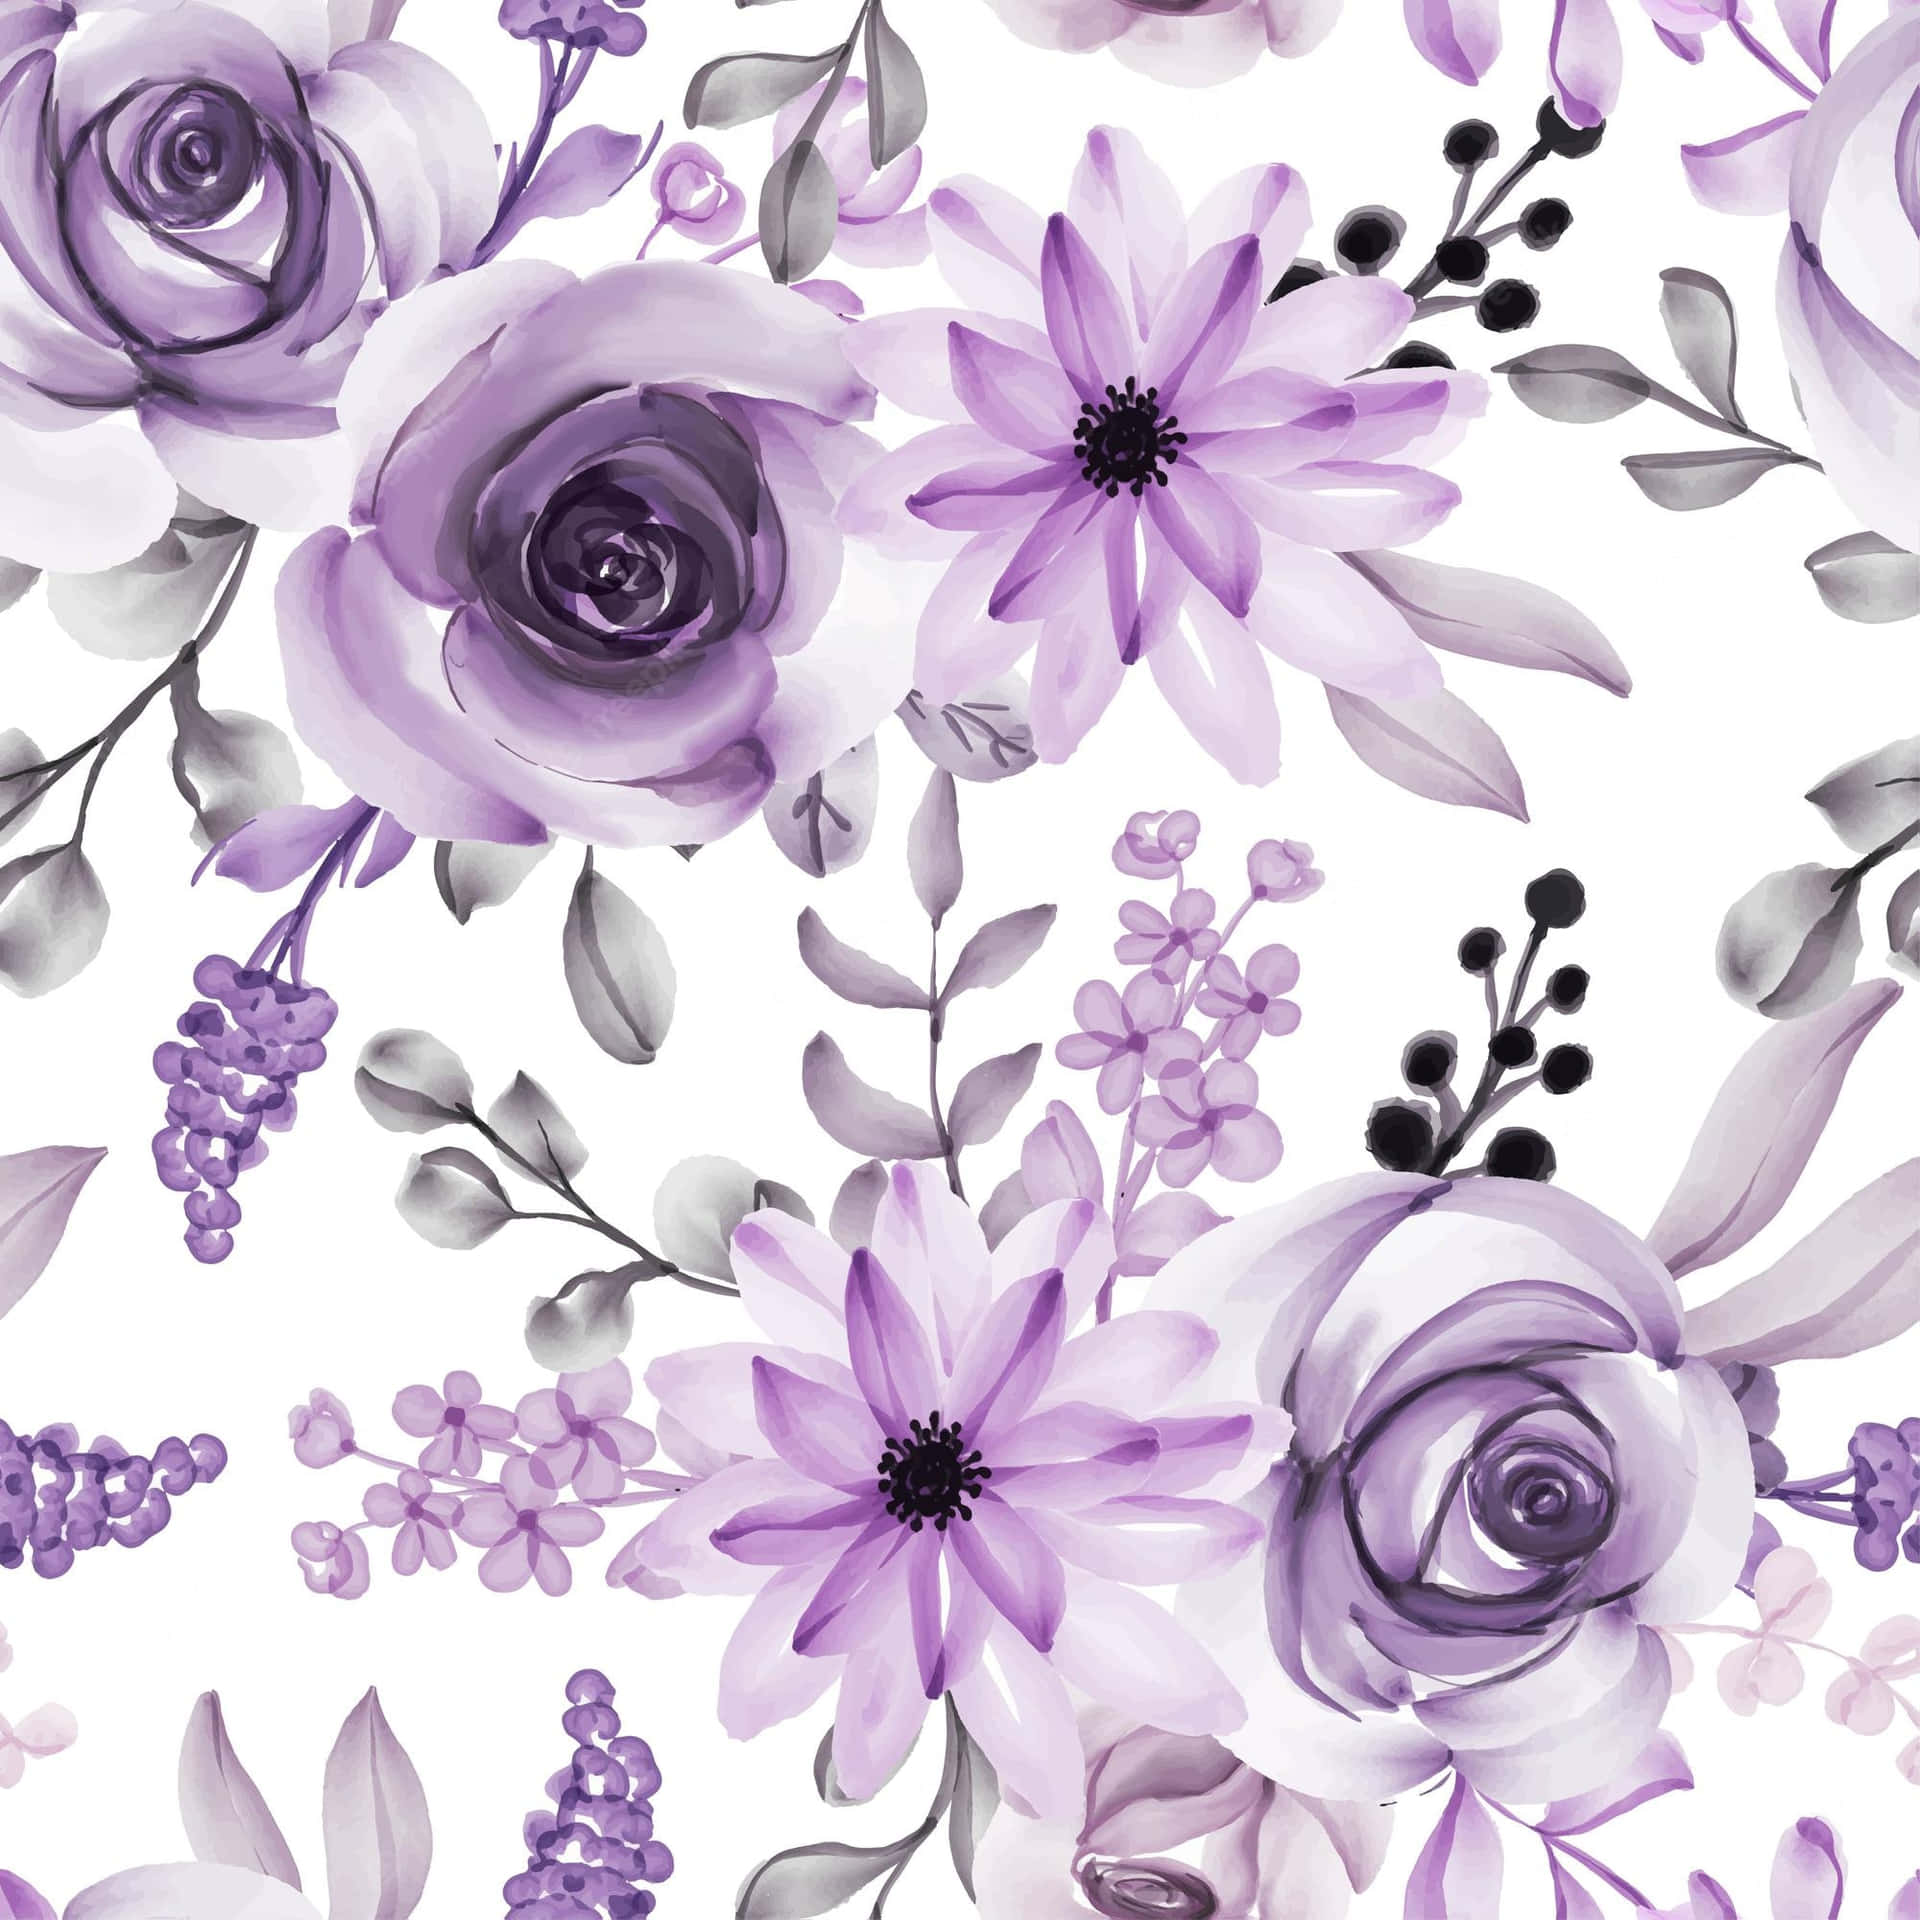 Delicate Beauty - A Purple Flower in Full Bloom